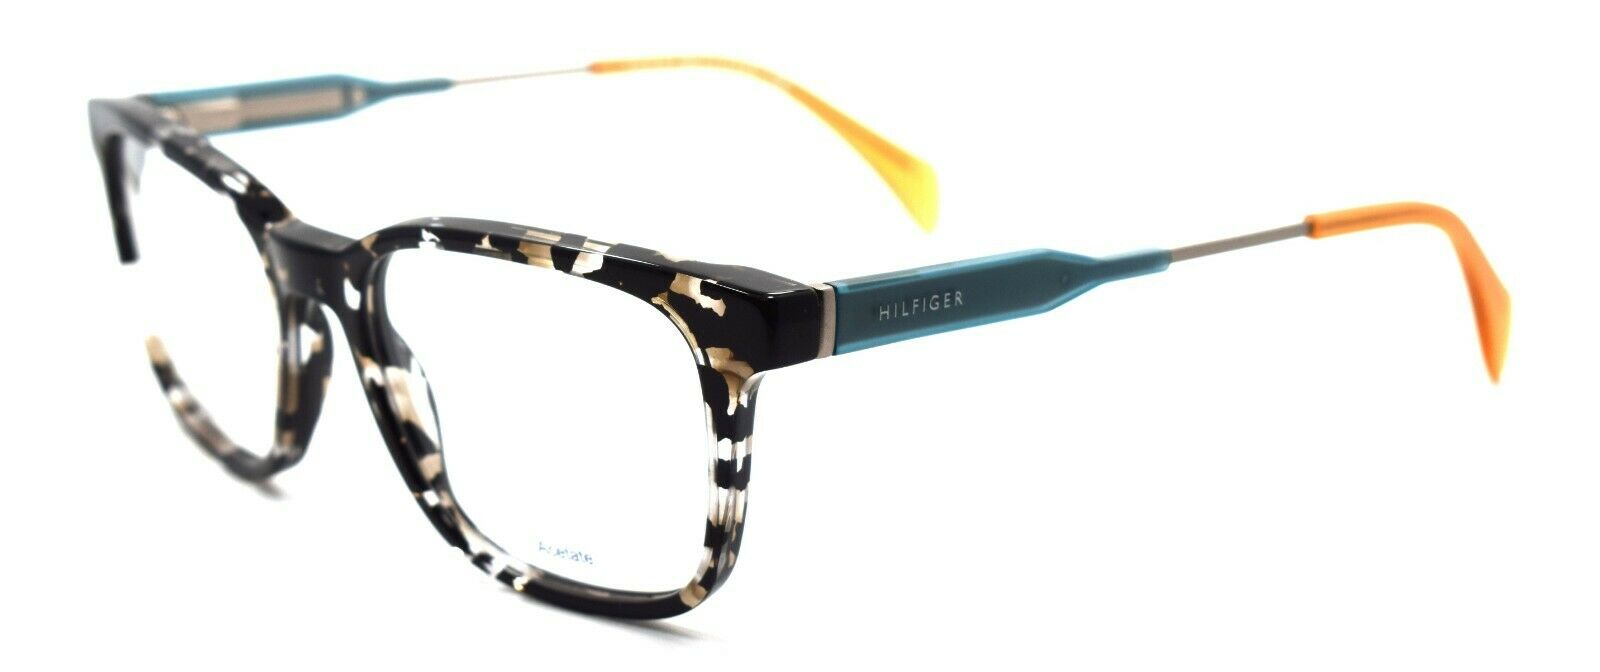 1-TOMMY HILFIGER TH 1351 JX2 Men's Eyeglasses Frames 50-18-145 Black Beige Havana-762753767486-IKSpecs